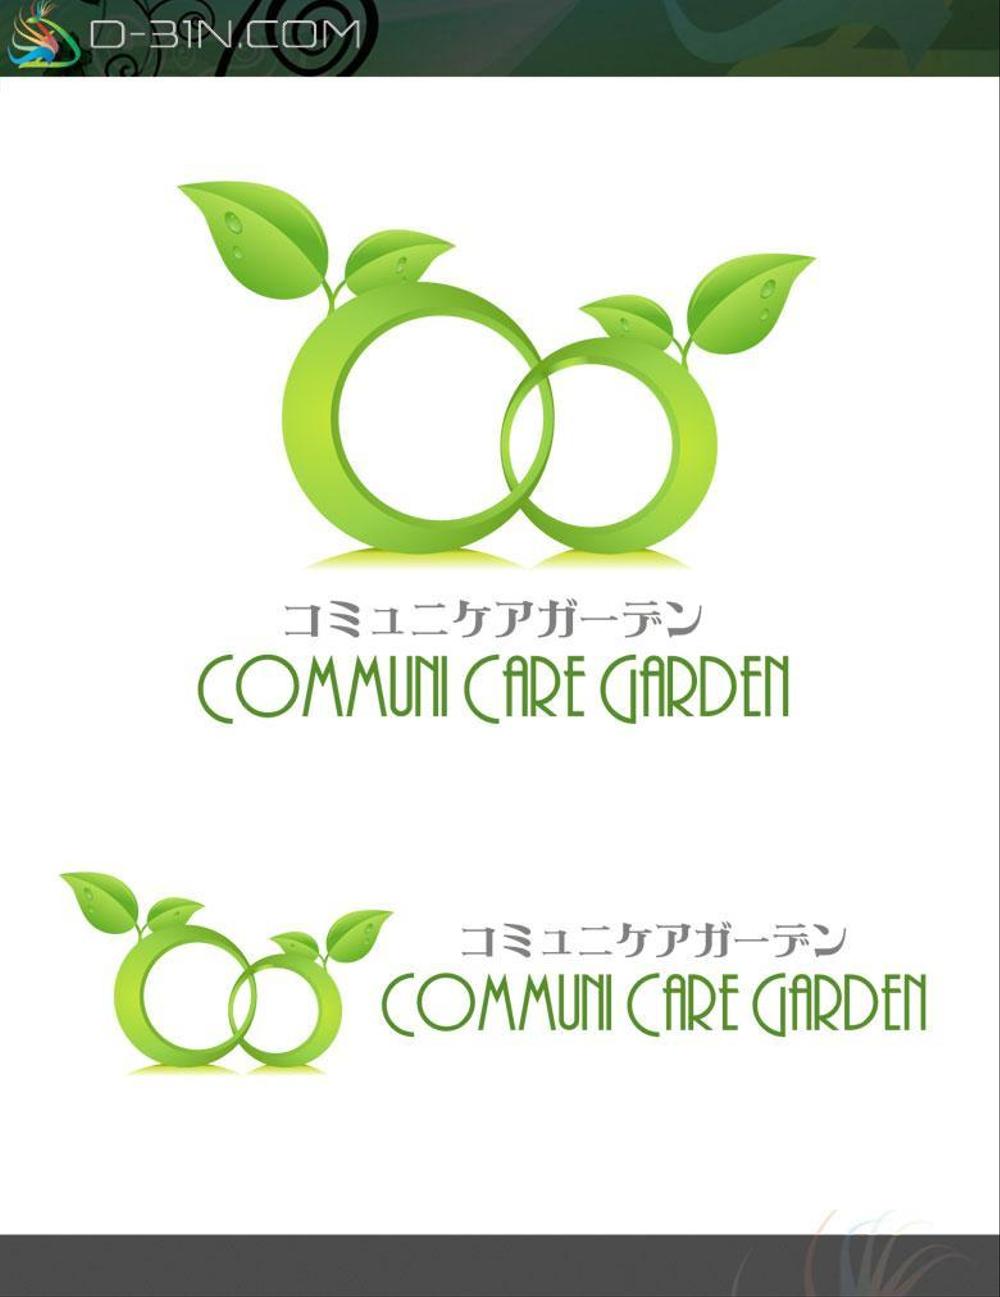 communicare-logo01.jpg